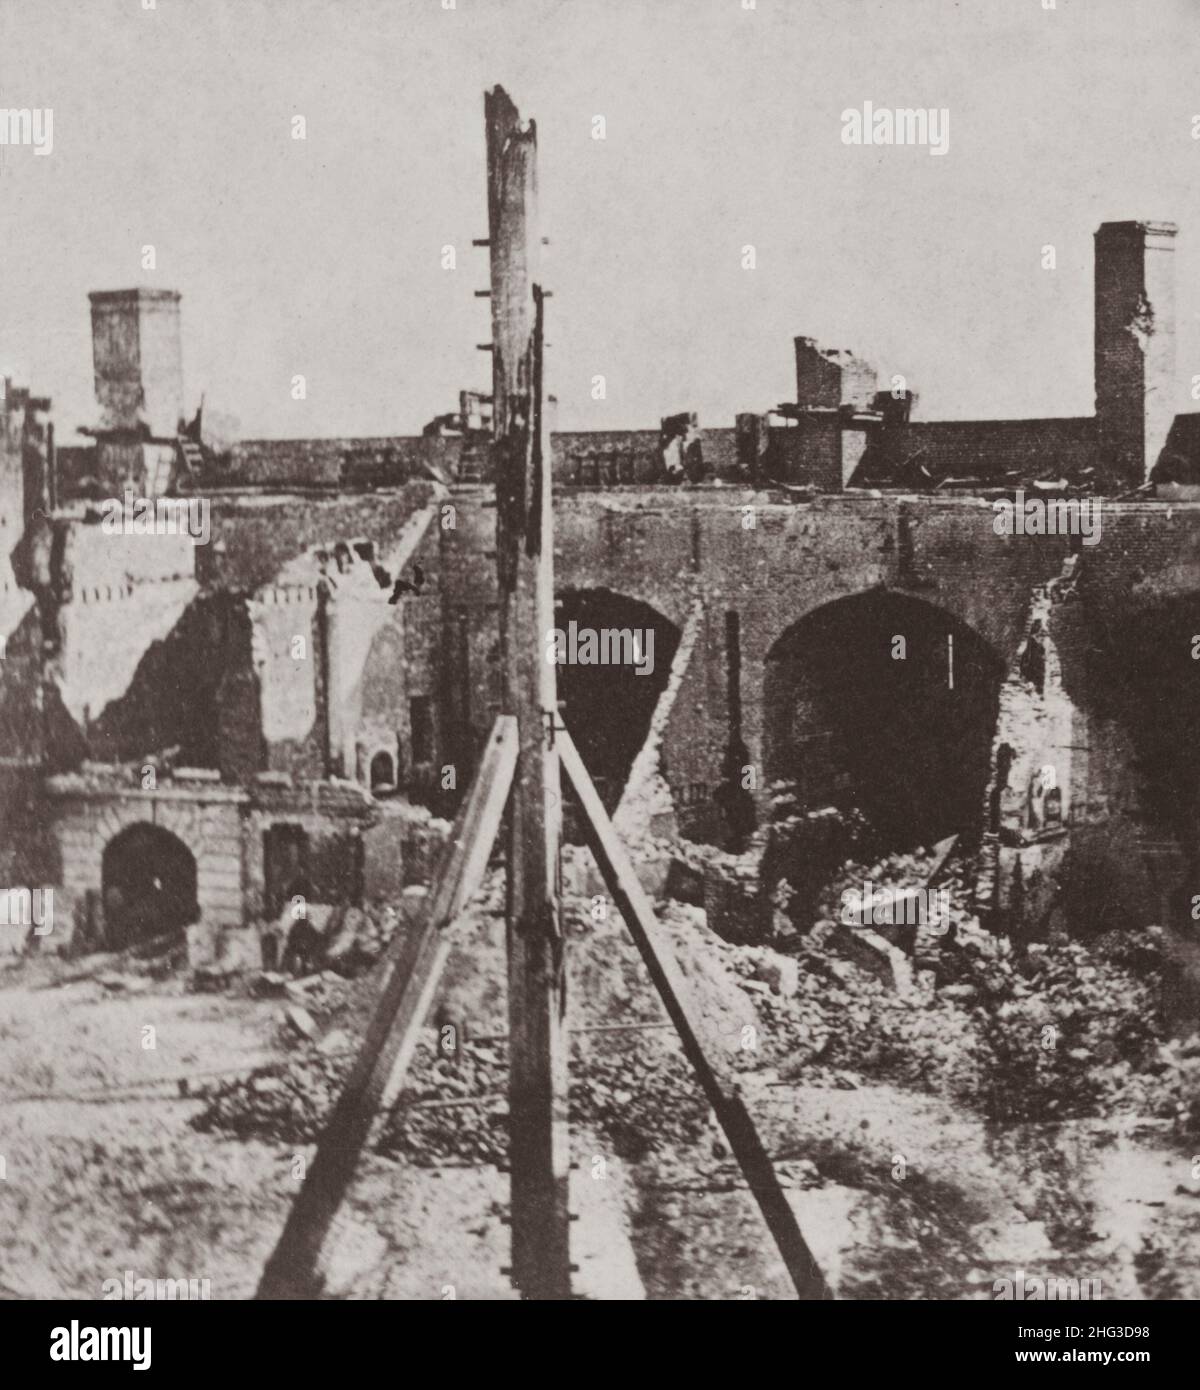 Photo d'époque de fort Sumter, ancien drapeau du personnel, '61 (c.-à-d.1861) la photographie montre une vue de l'intérieur du fort Sumter avec le drapeau endommagé et o Banque D'Images